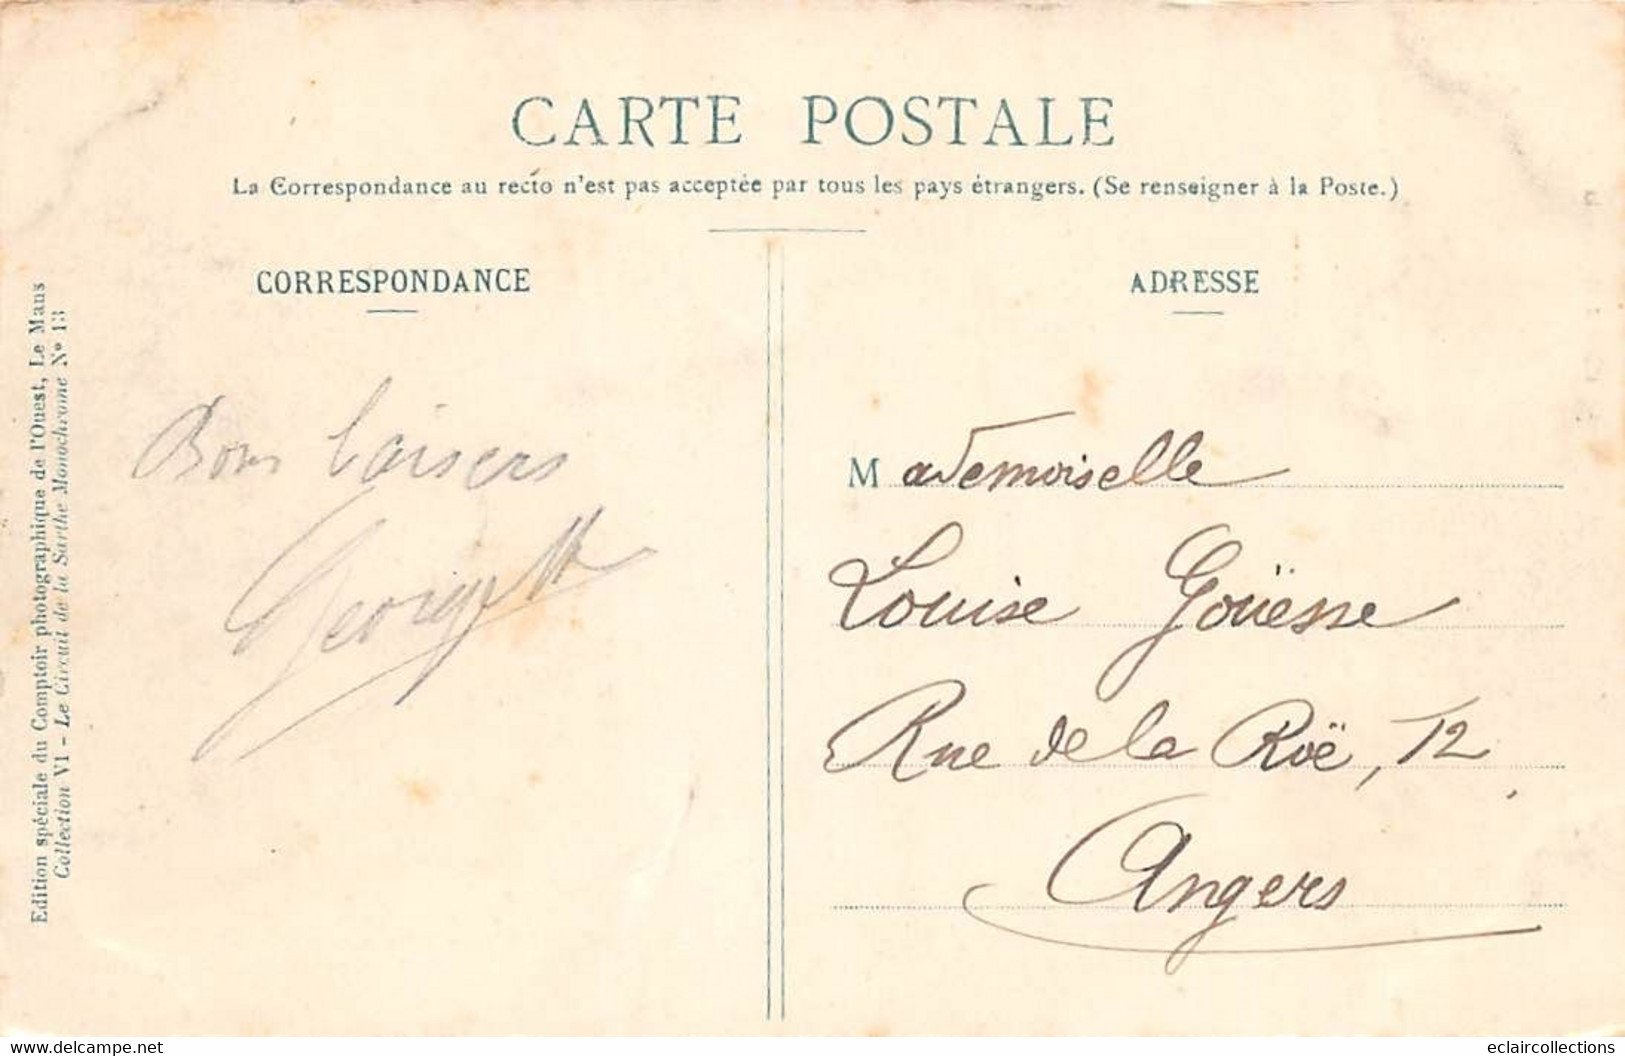 Thème Sport automobile    :Circuit de La Sarthe 1906 . 39 cartes numérotées - manque N° 2  Edit.Garczinski   (voir scan)